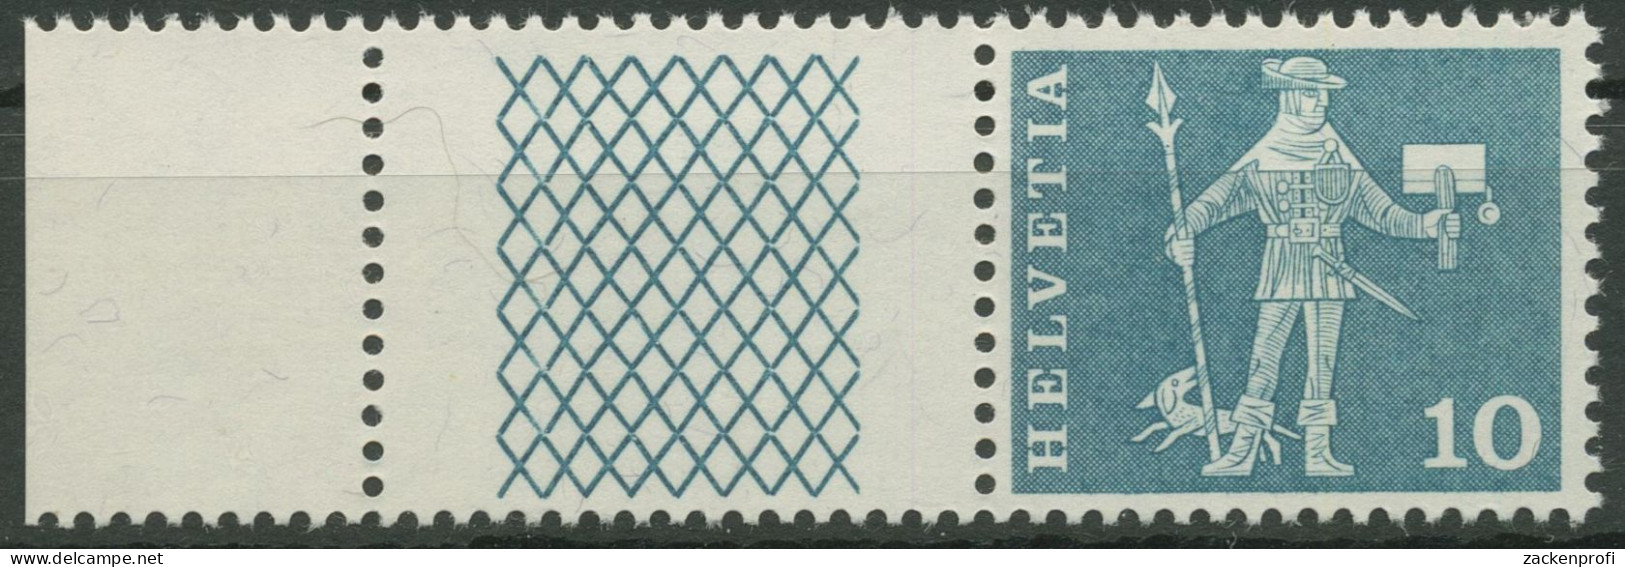 Schweiz 1960 Postmotive Postbote 697 W 26 Postfrisch - Ungebraucht